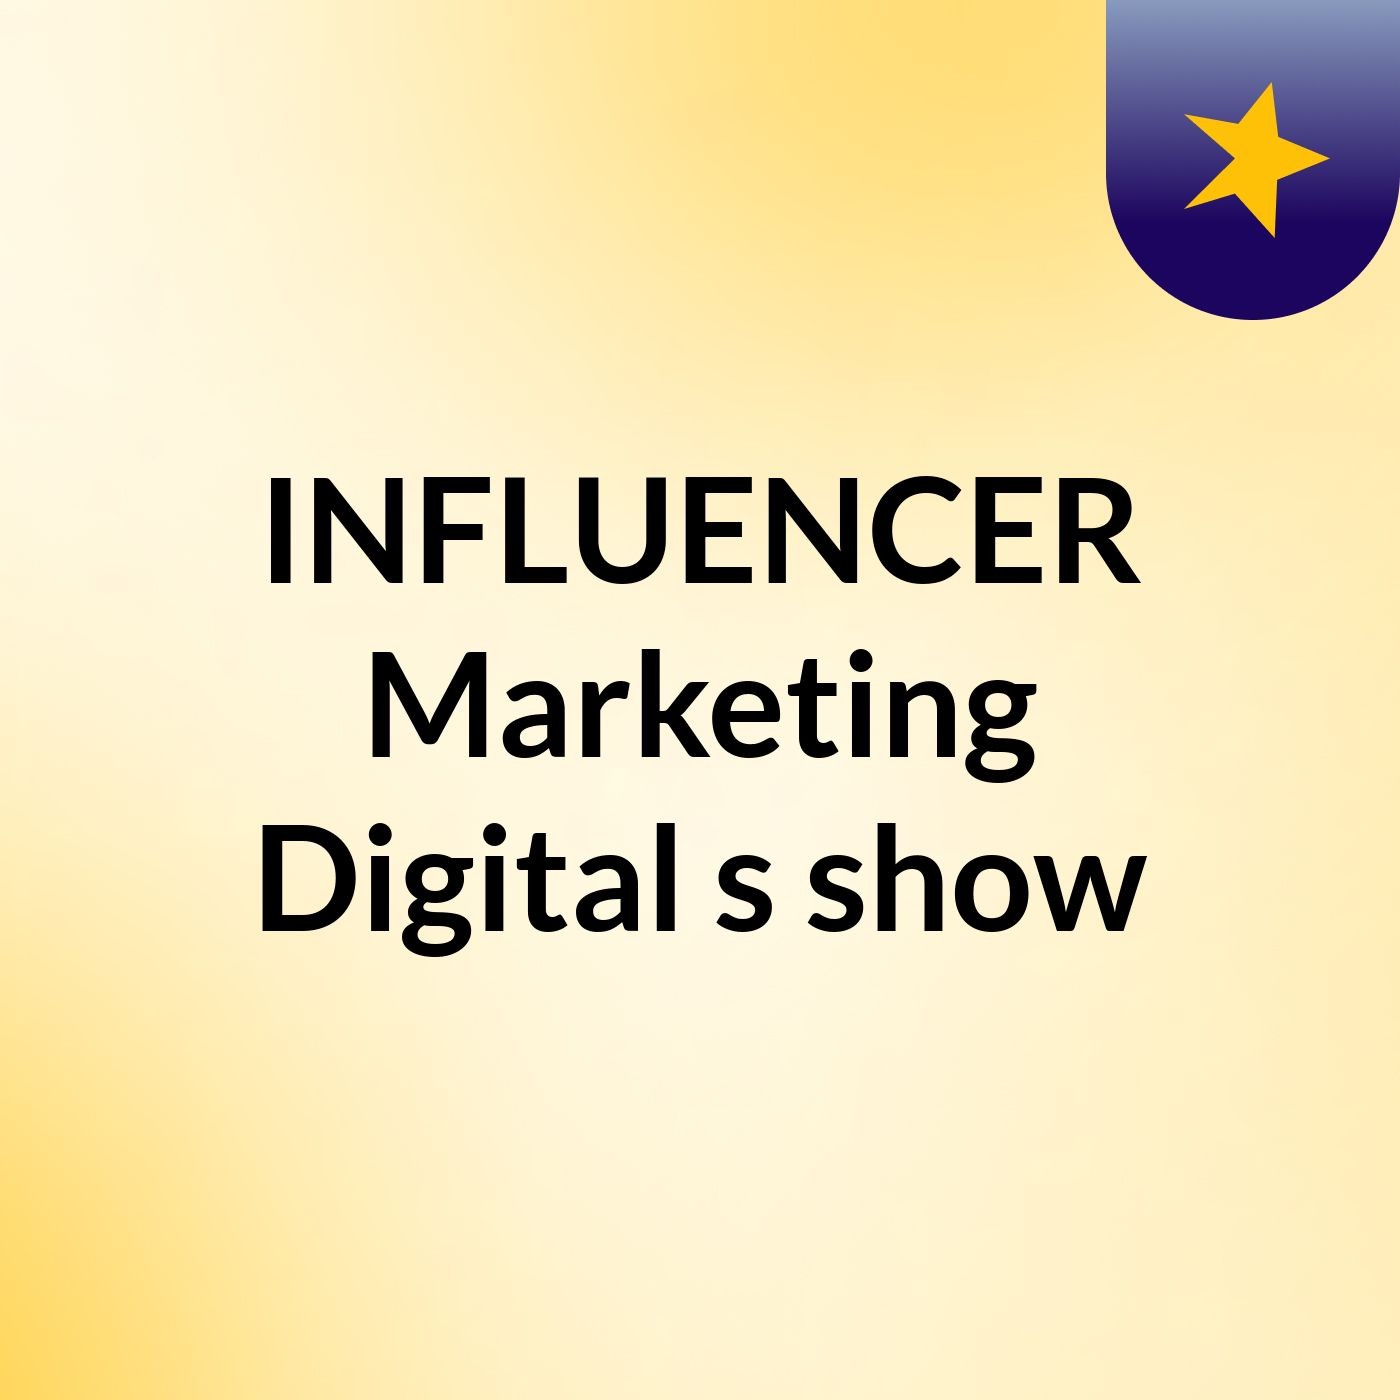 INFLUENCER Marketing Digital's show